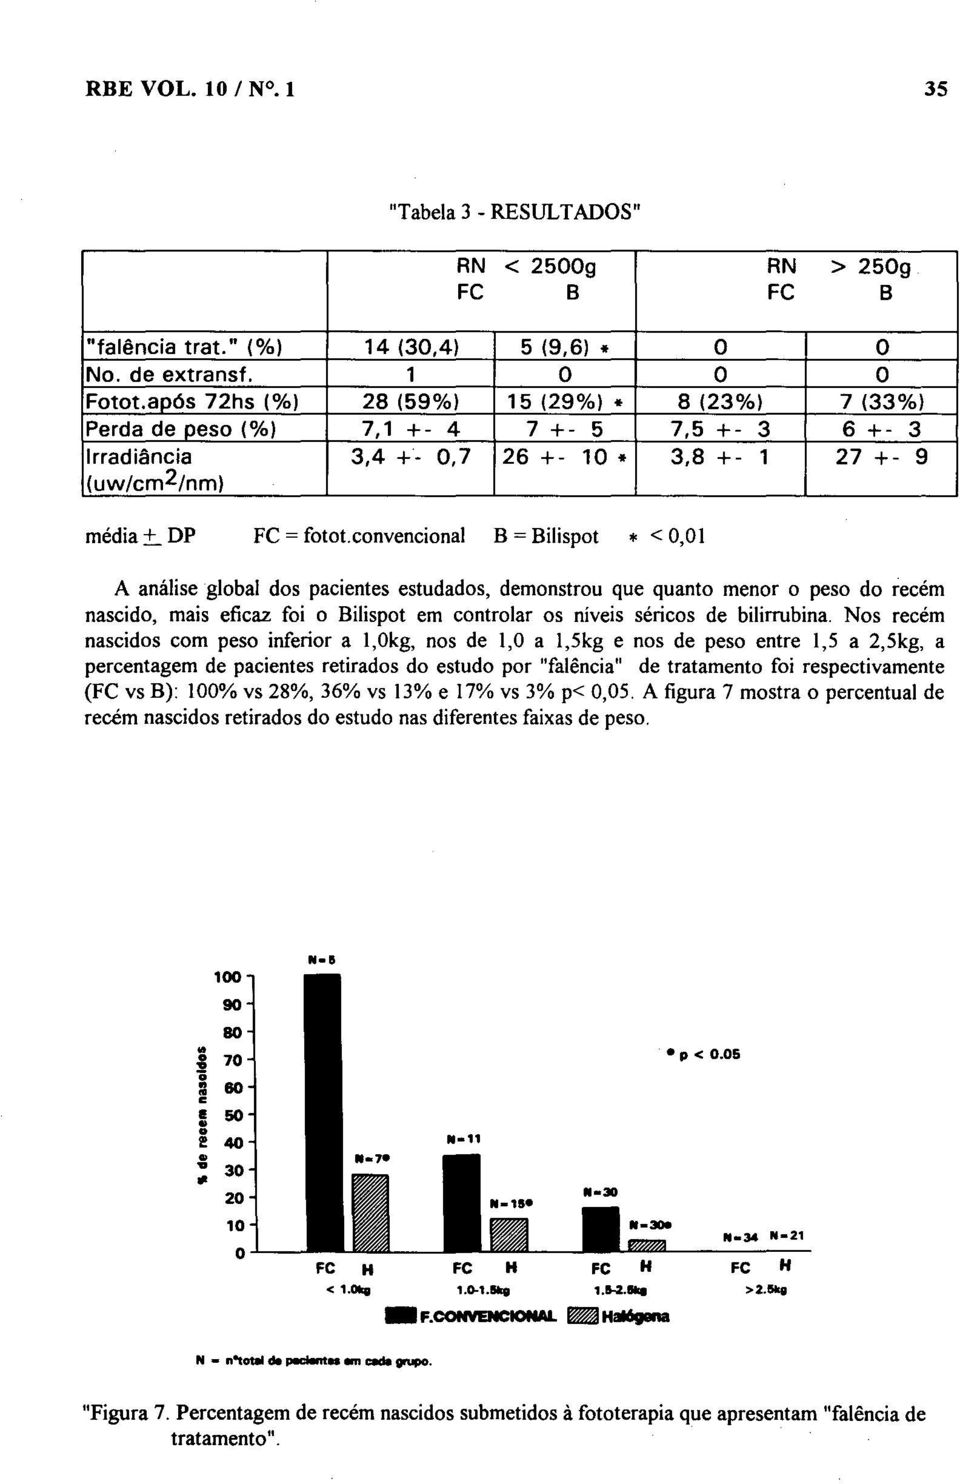 convencional B = Bilispot * < 0,01 A análise global dos pacientes estudados, demonstrou que quanto menor o peso do recém nascido, mais eficaz foi o Bilispot em controlar os níveis séricos de